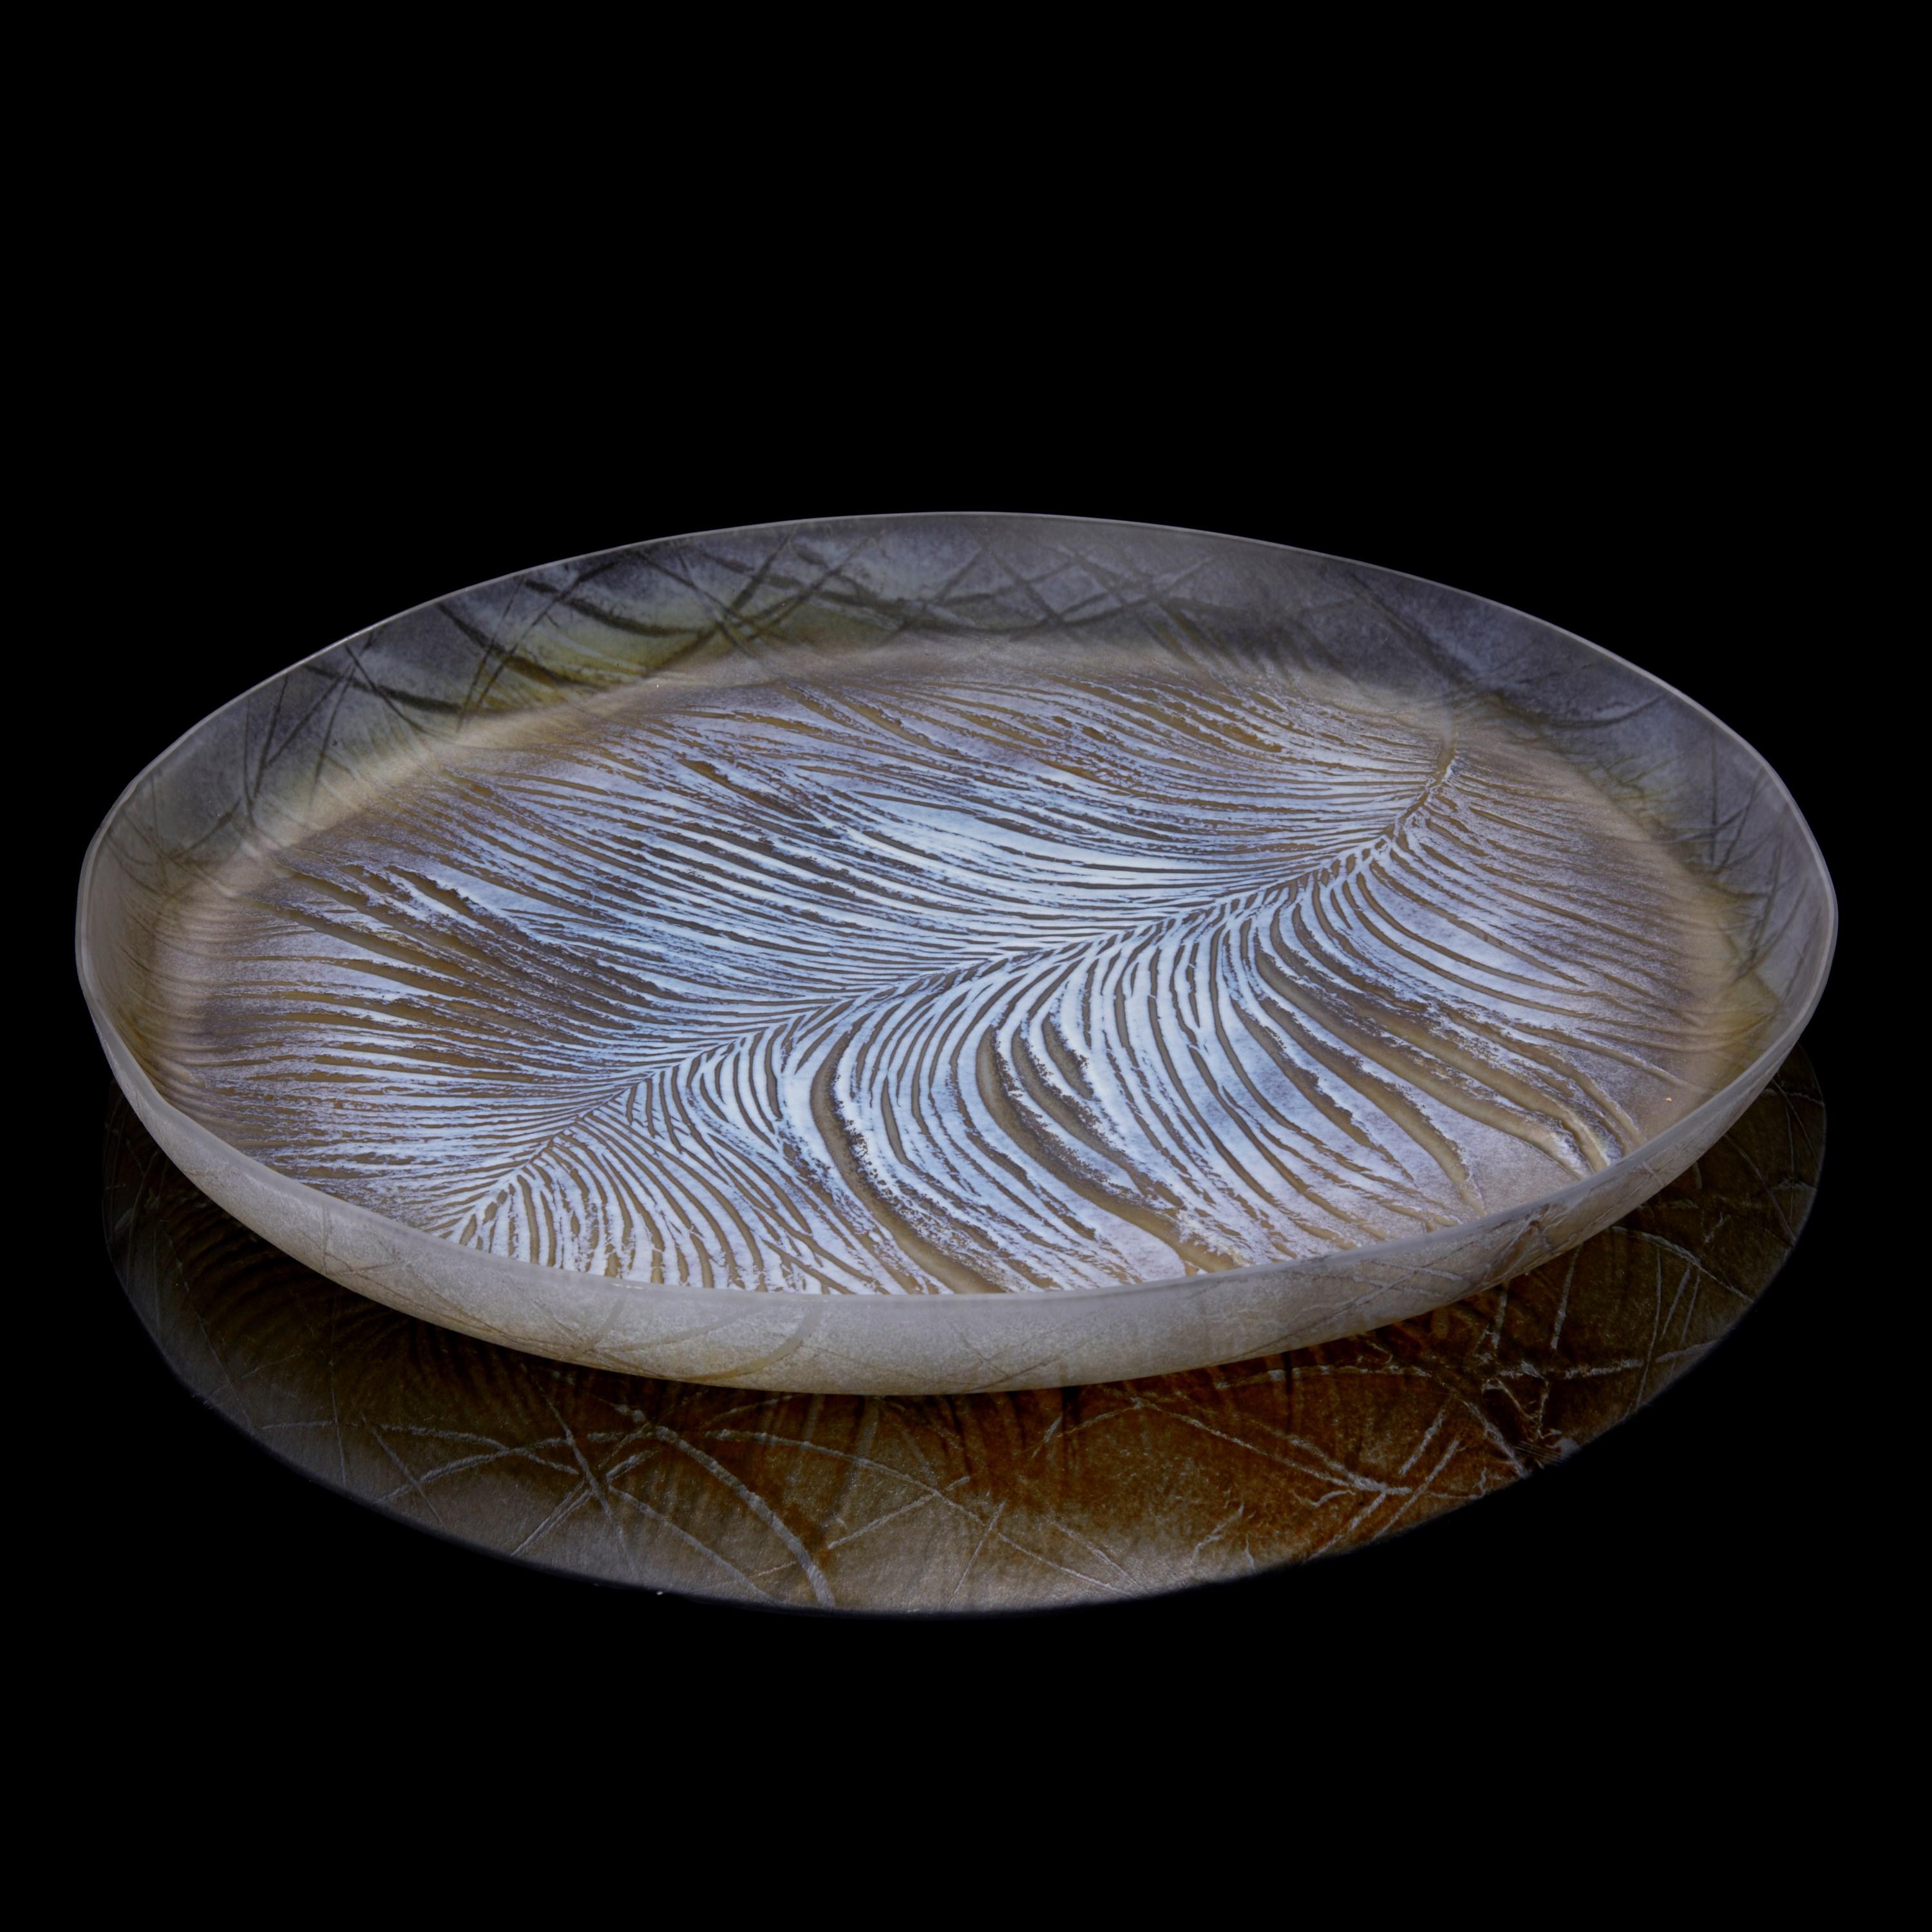 Le plateau de plumes II est une pièce unique de l'artiste britannique Amanda J Simmons.

Travaillant avec la feuille de verre plate, Simmons superpose des couleurs en poudre pour créer les textures qu'elle souhaite, traitant le verre comme une